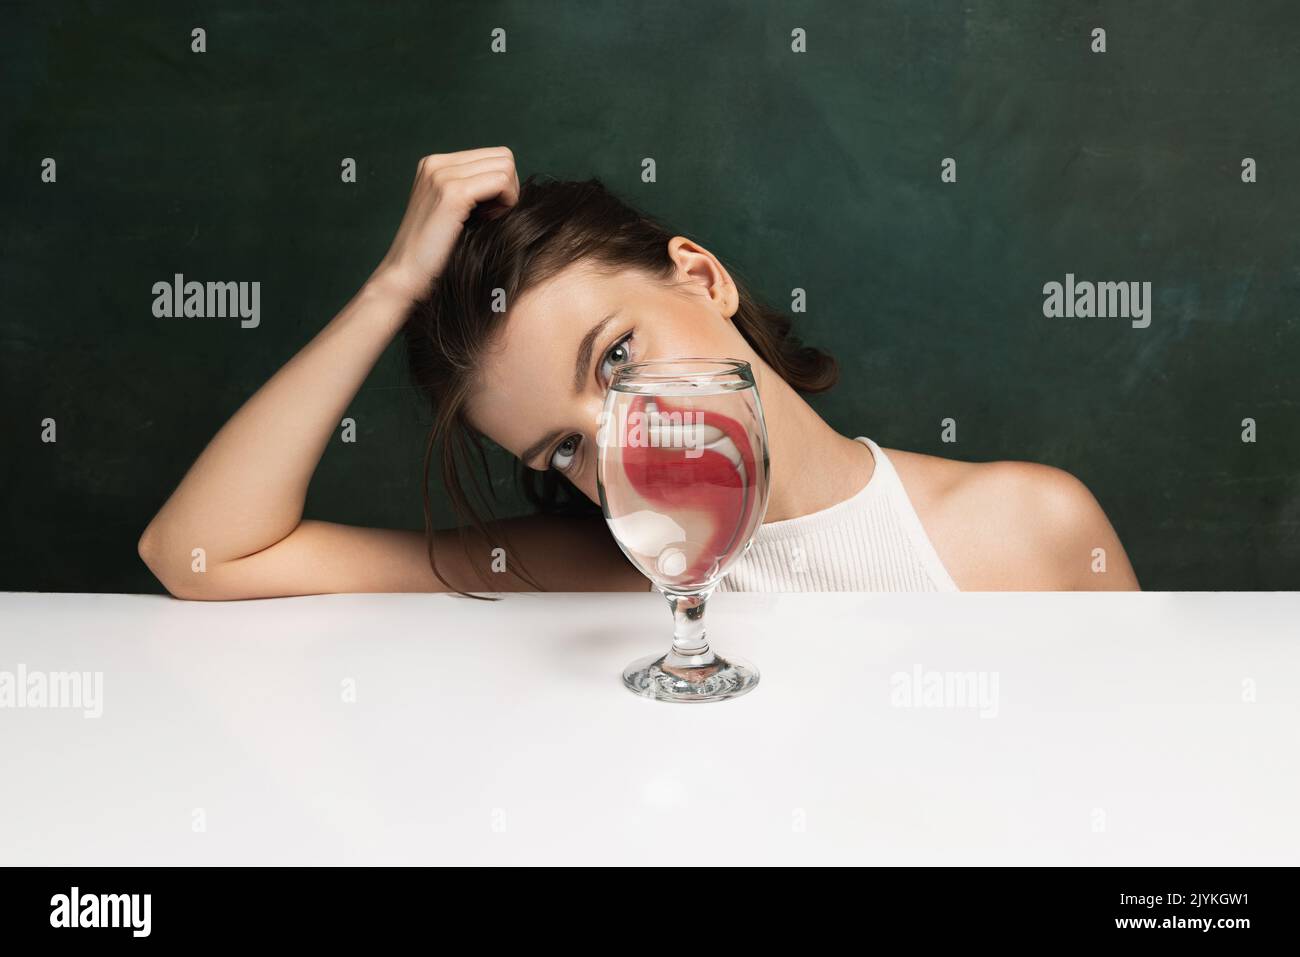 Modern Art Photography Funny Weird Girls Face Through Glass Of Water Object Distortion 5388